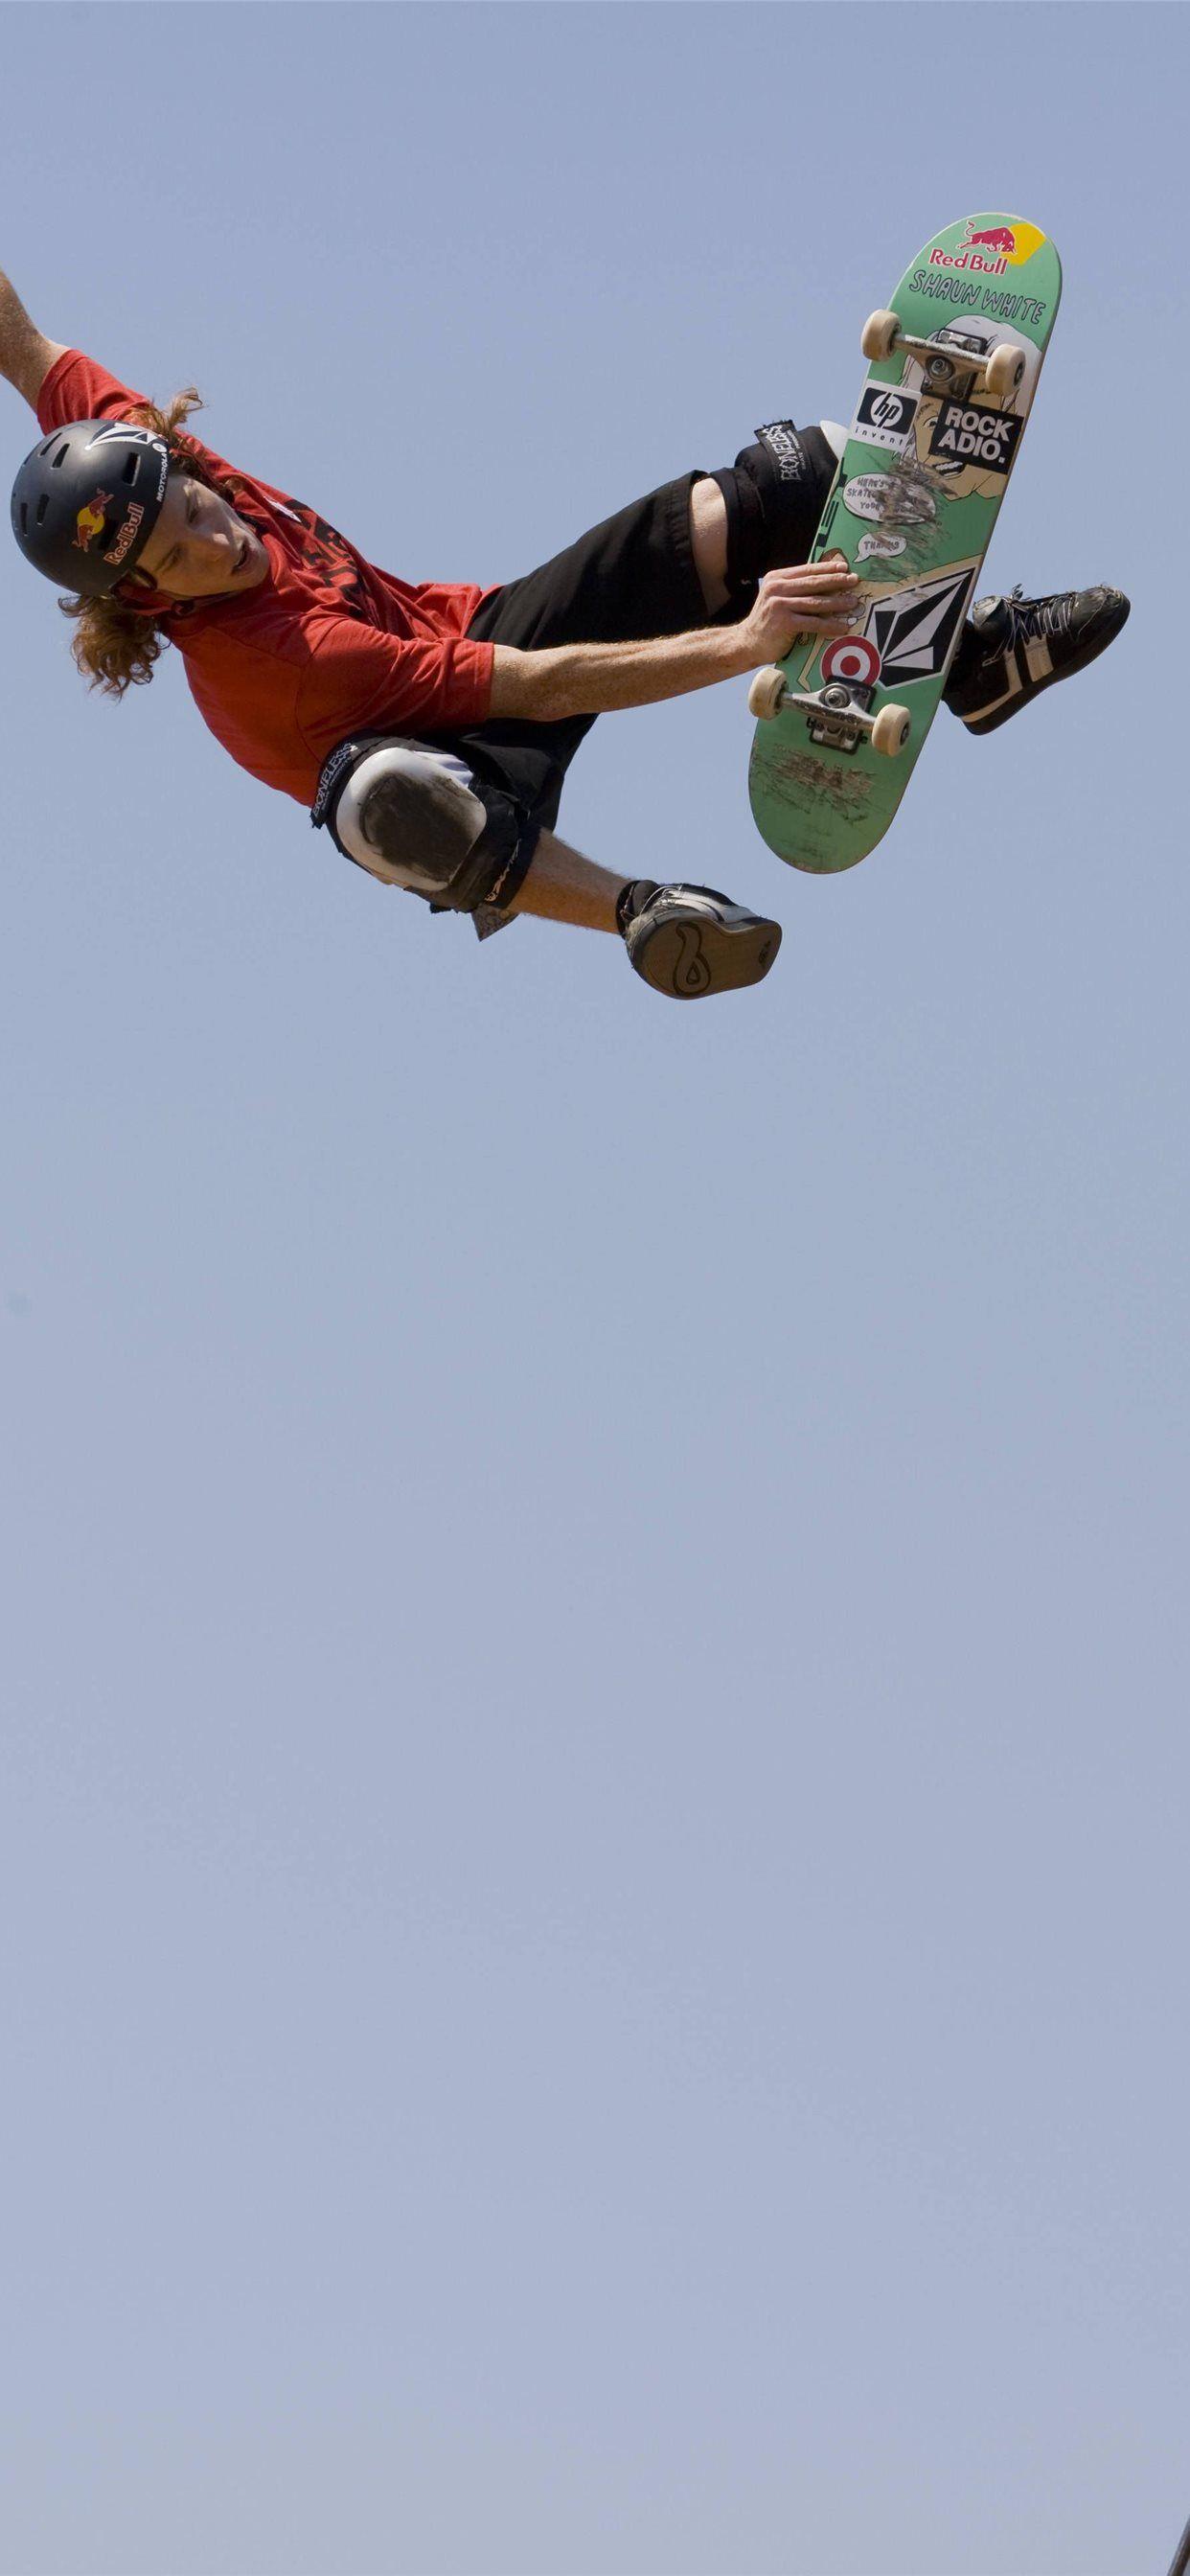 Shaun White Standup Skateparks Benefit Held Stock Photo 260061014